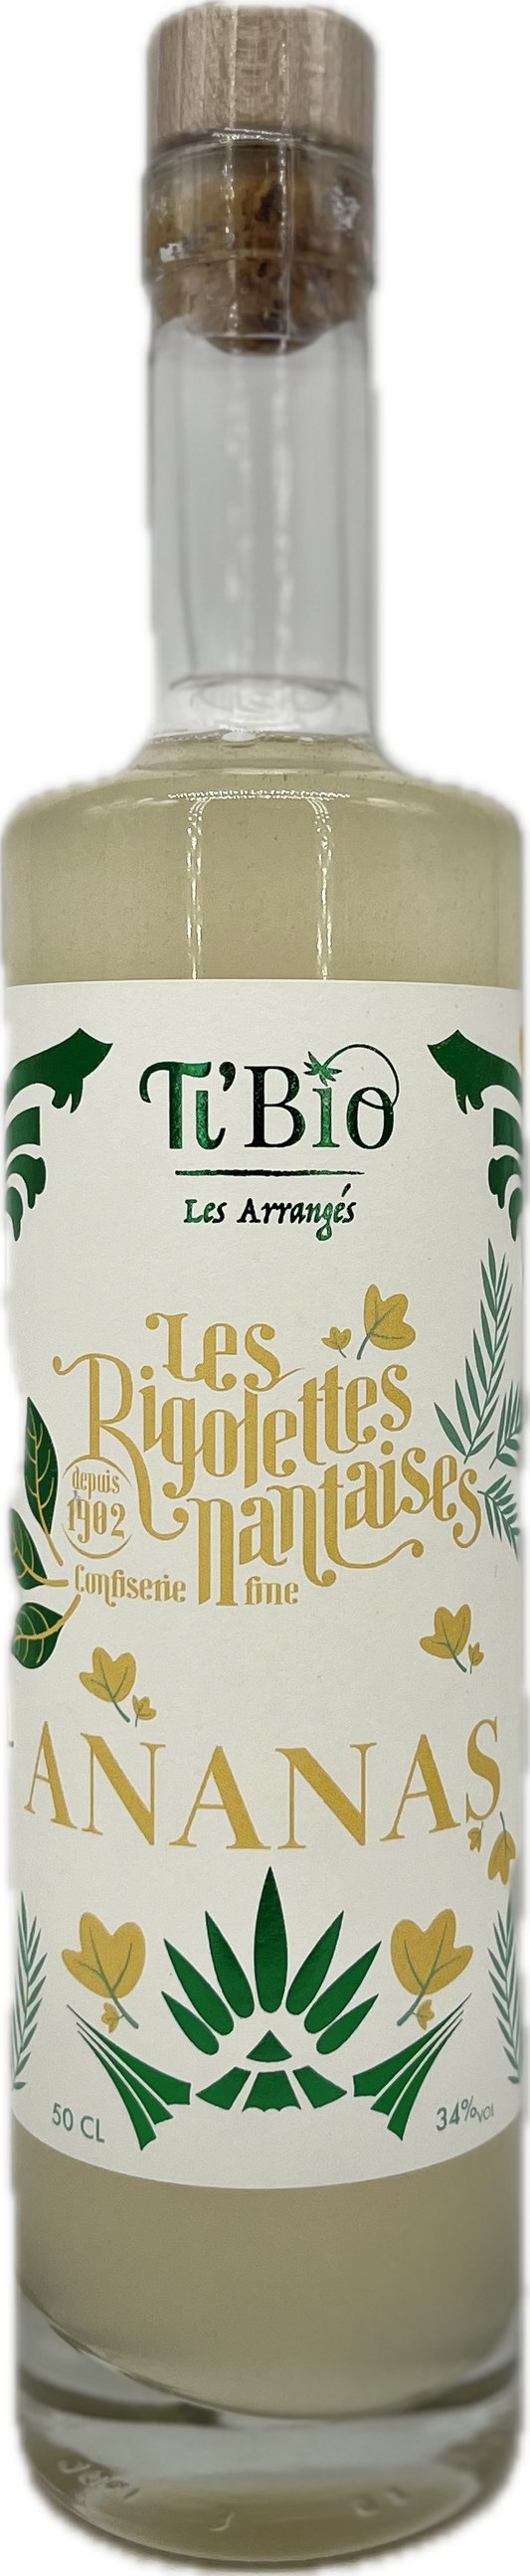 BOUTEILLE DE RHUM aux Rigolettes Ananas 50 CL